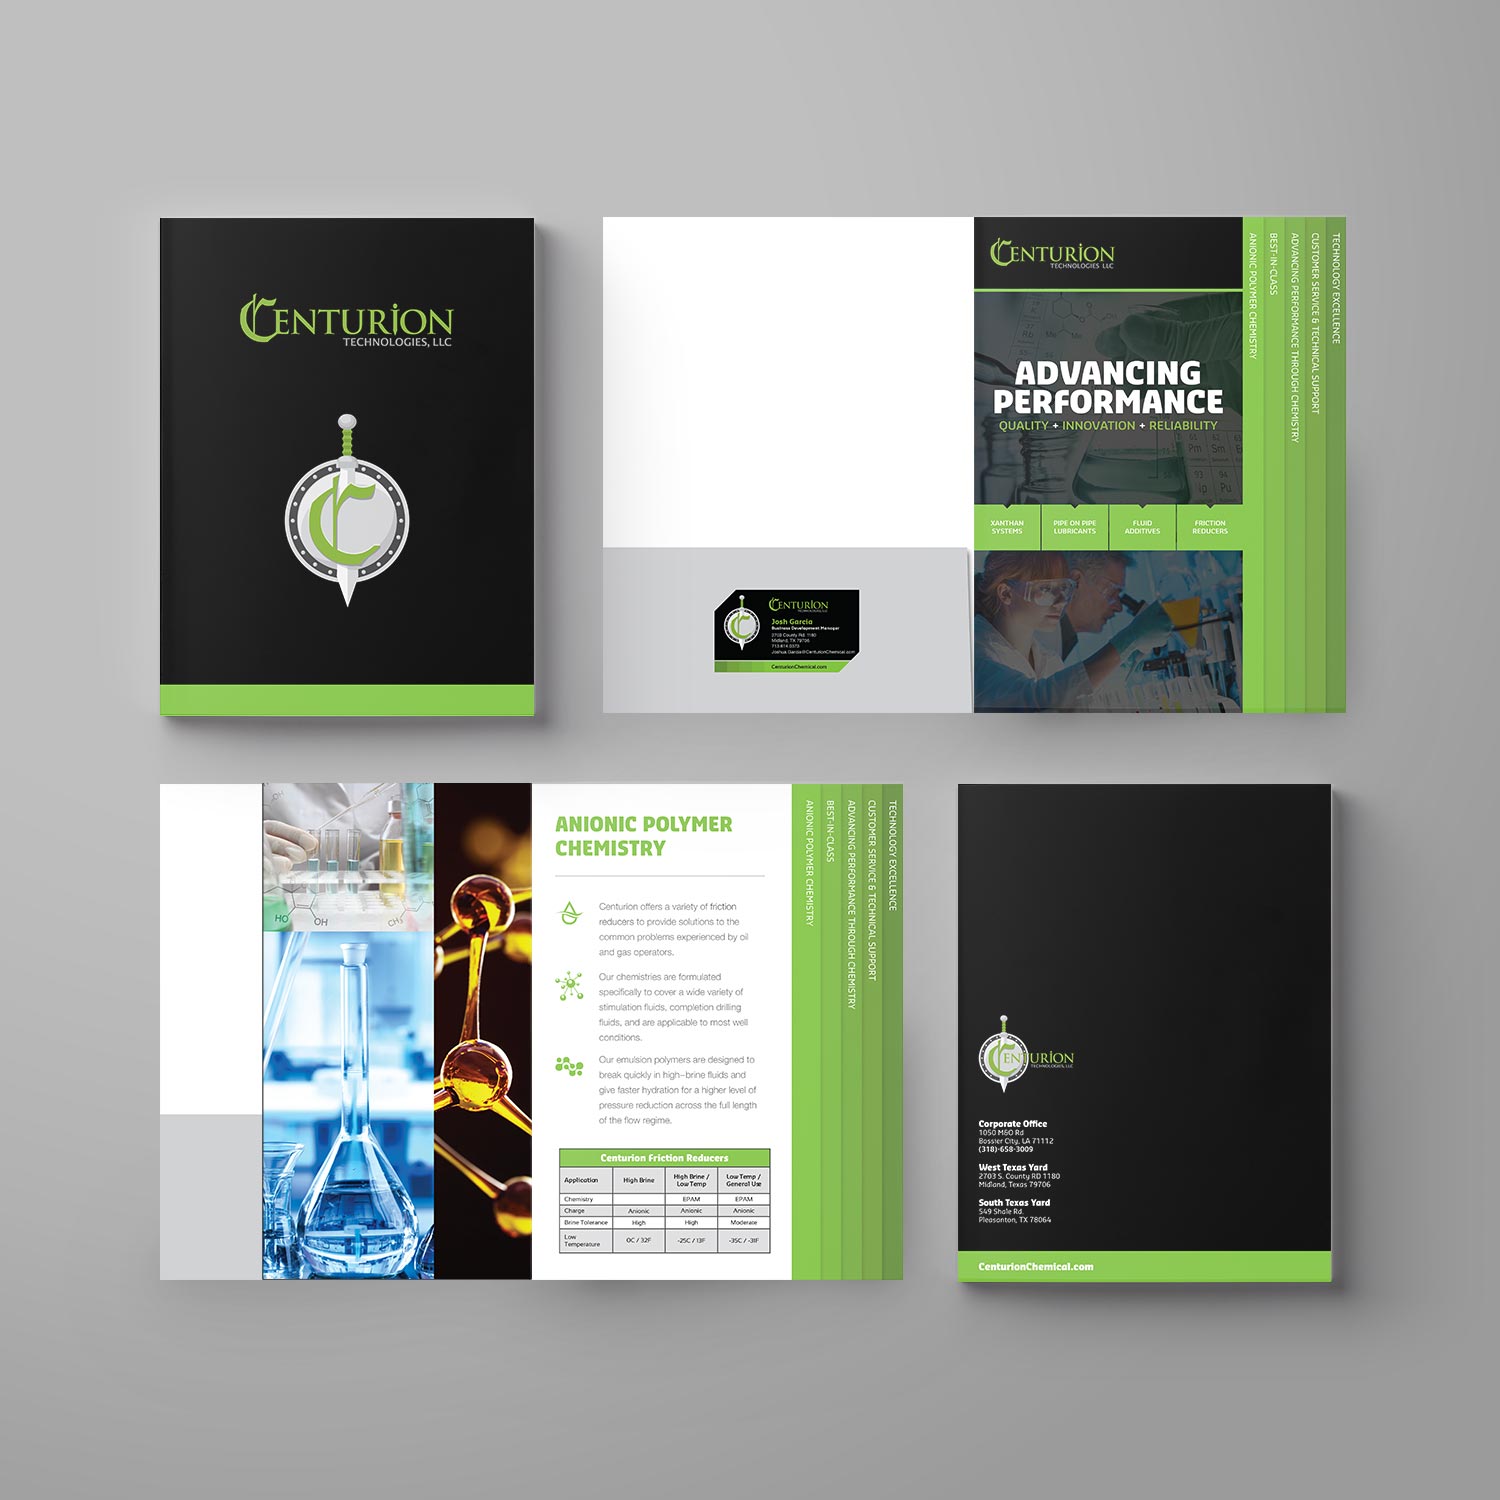 Design and printing of tabbed pocket presentation folder for Centurion.